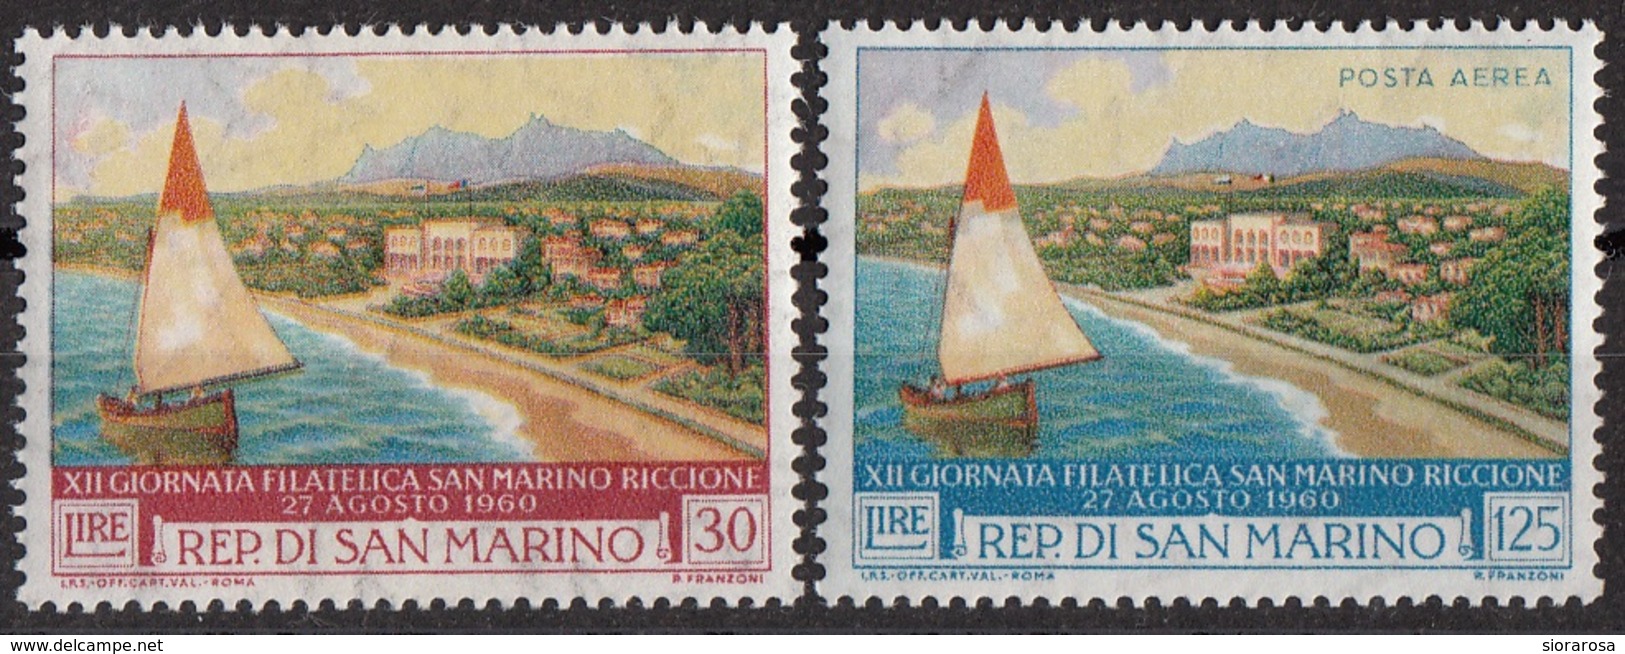 San Marino 1960 Bf.543-A136 Mostra Filatelica - Barca E Riccione Full Set MNH - Barche